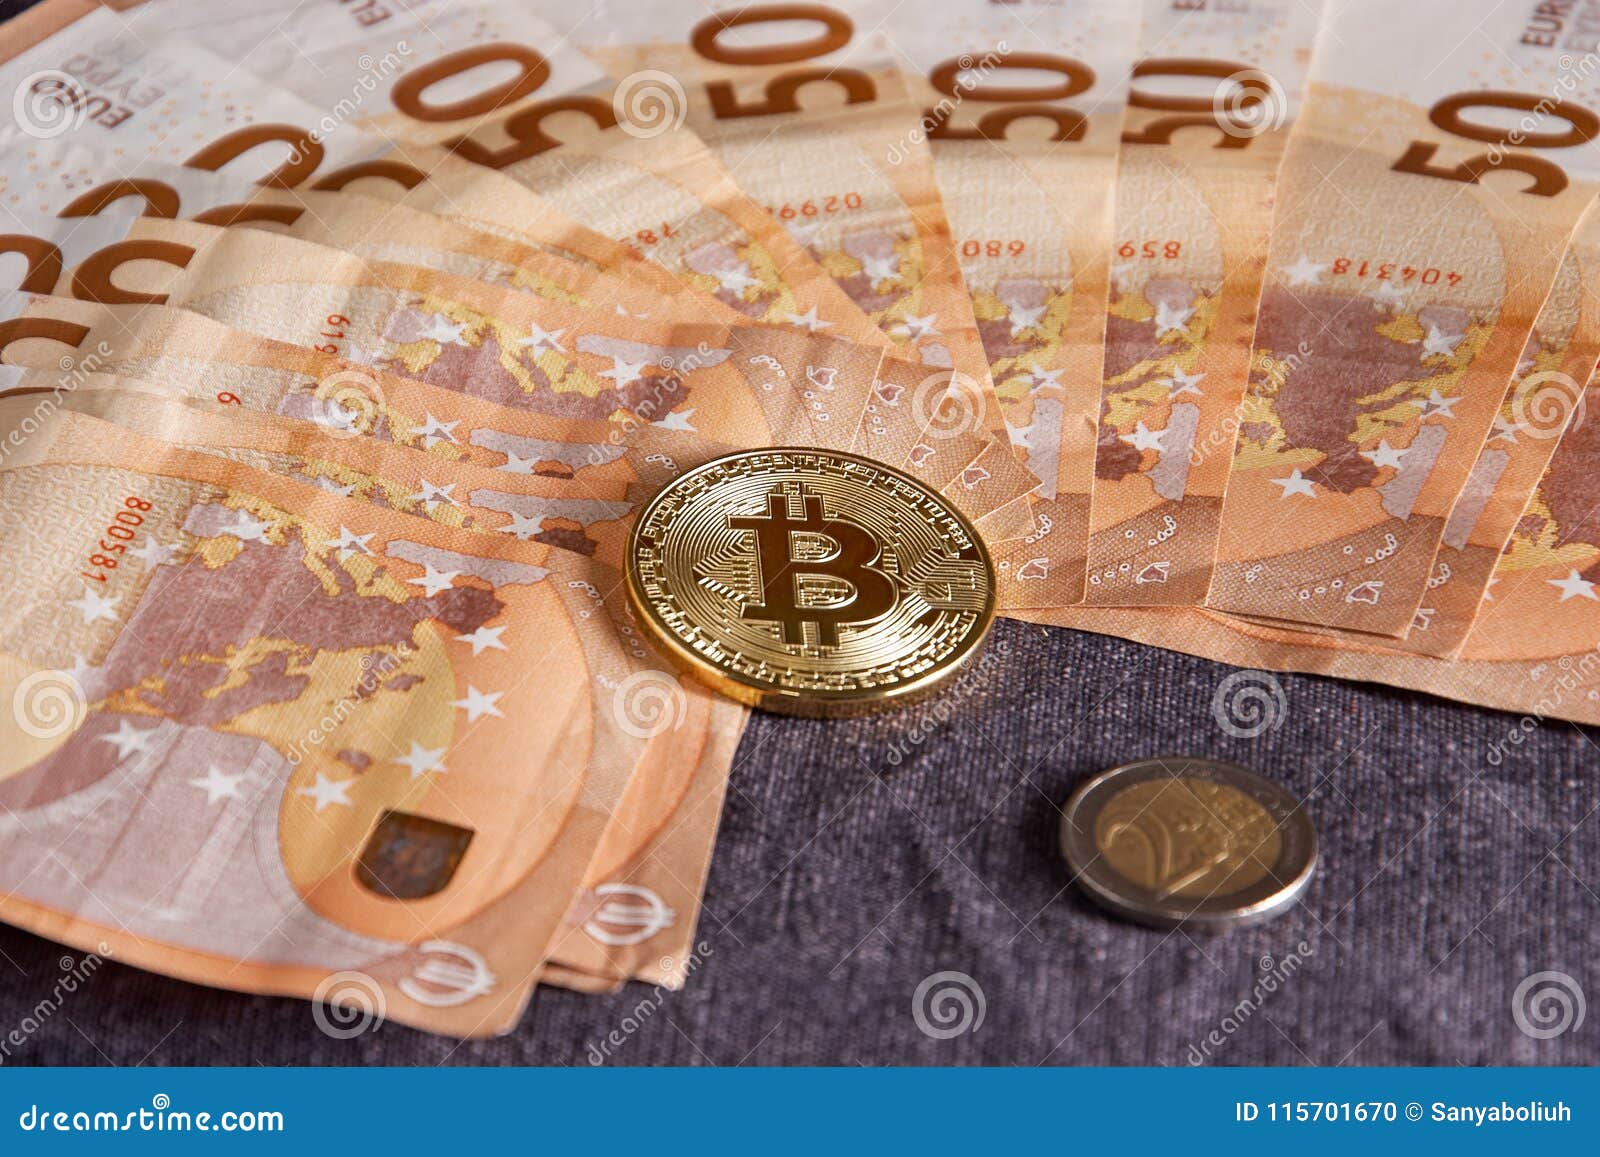 50 euro in bitcoin